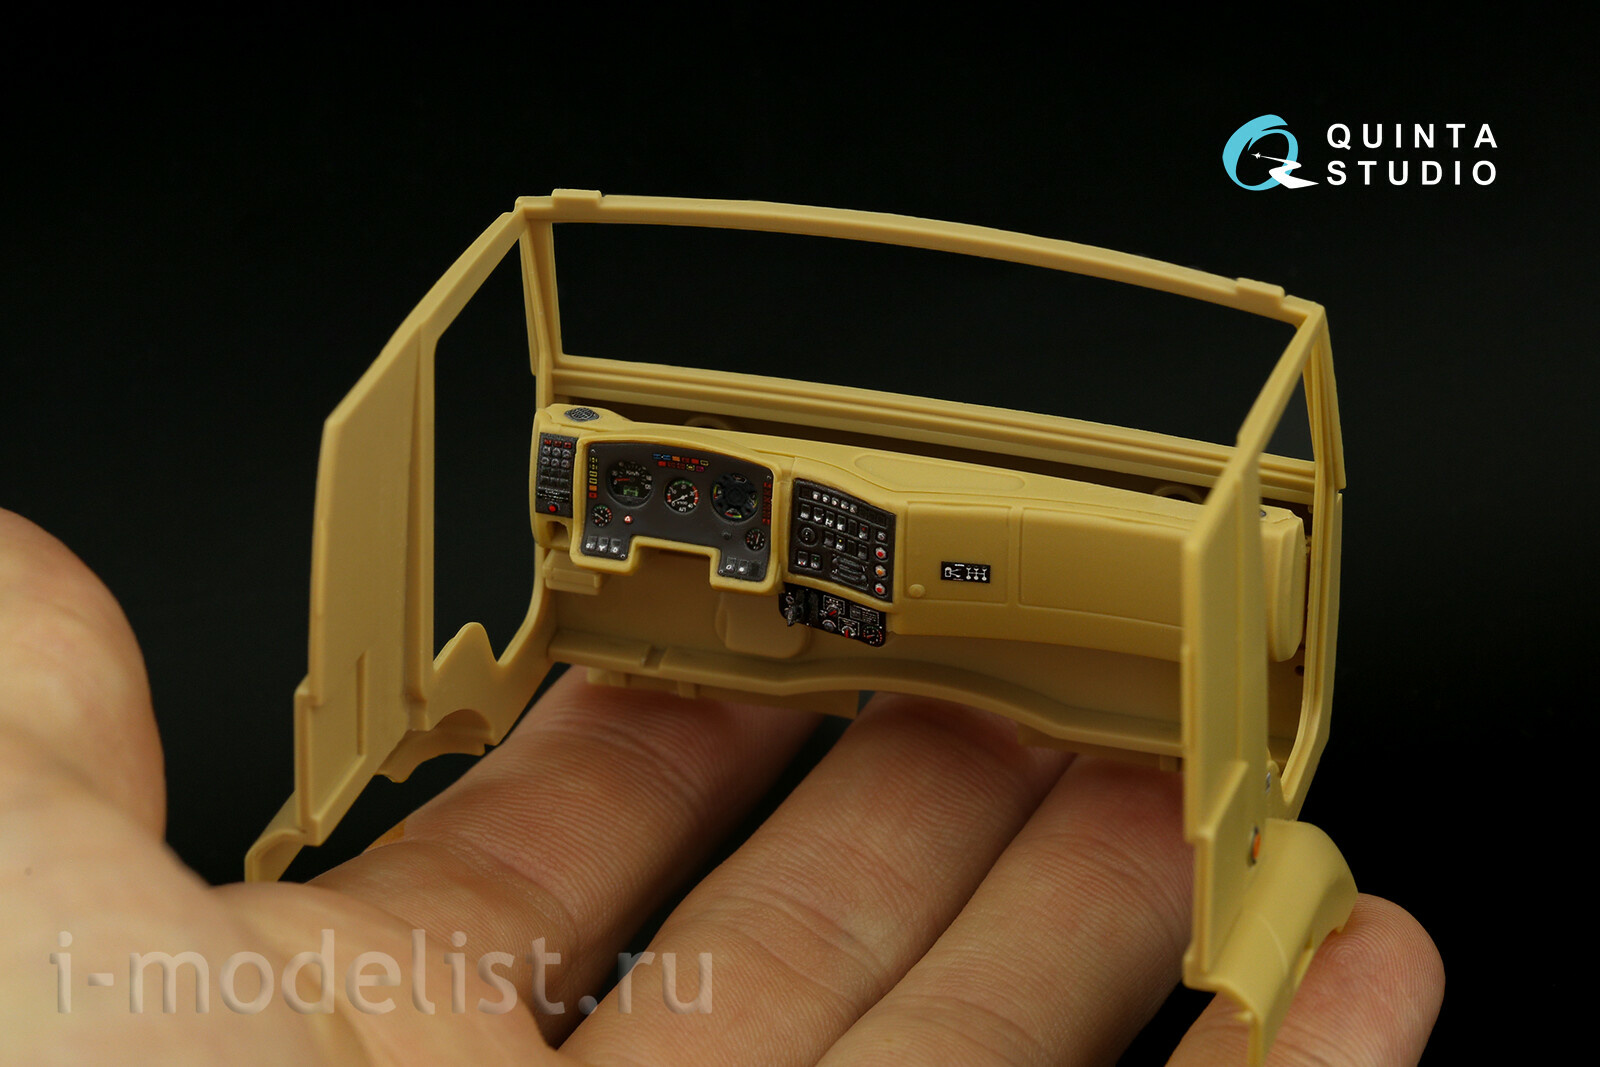 QD35064 Quinta Studio 1/35 3D Декаль интерьера кабины Pantsir-S1 (SA-22 Greyhound) (Meng)